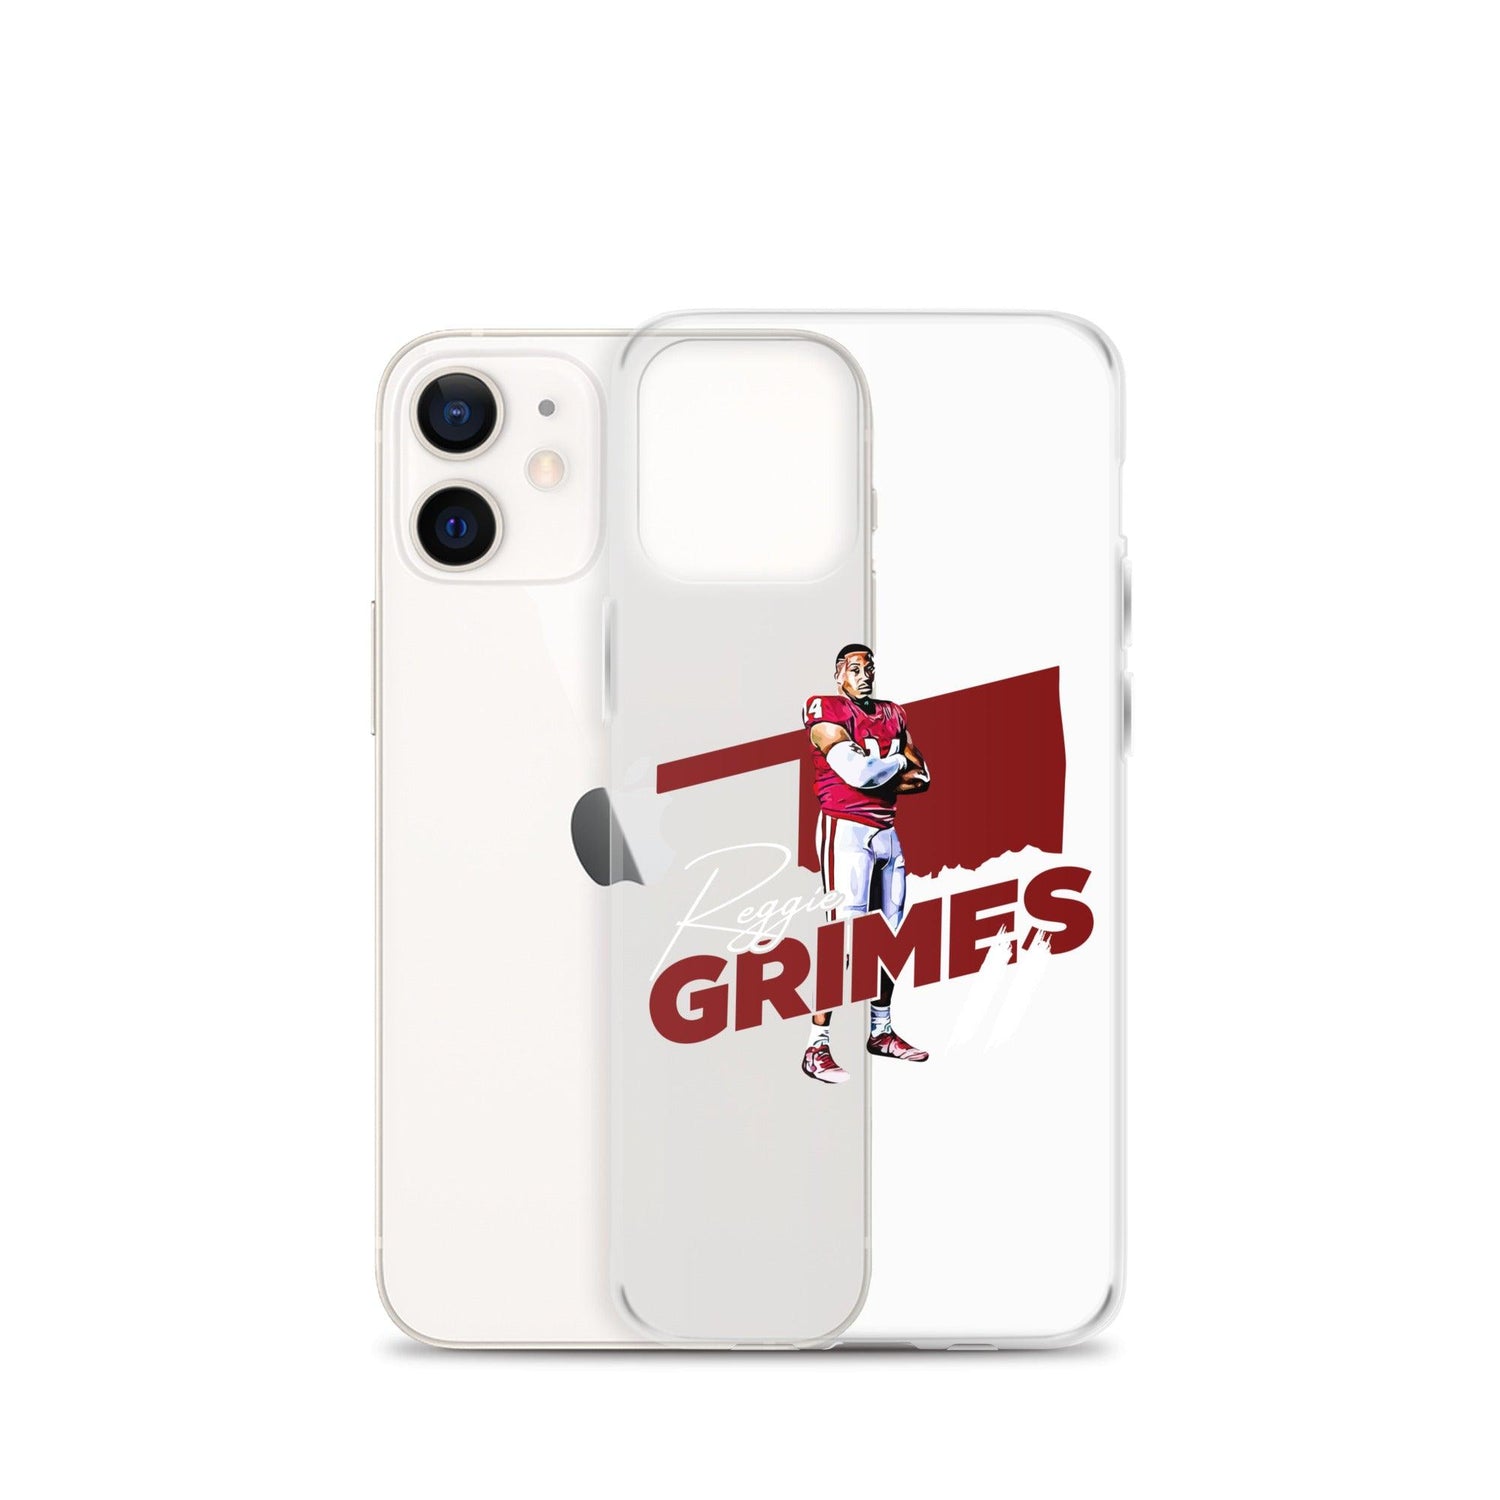 Reggie Grimes II "OKL" iPhone Case - Fan Arch